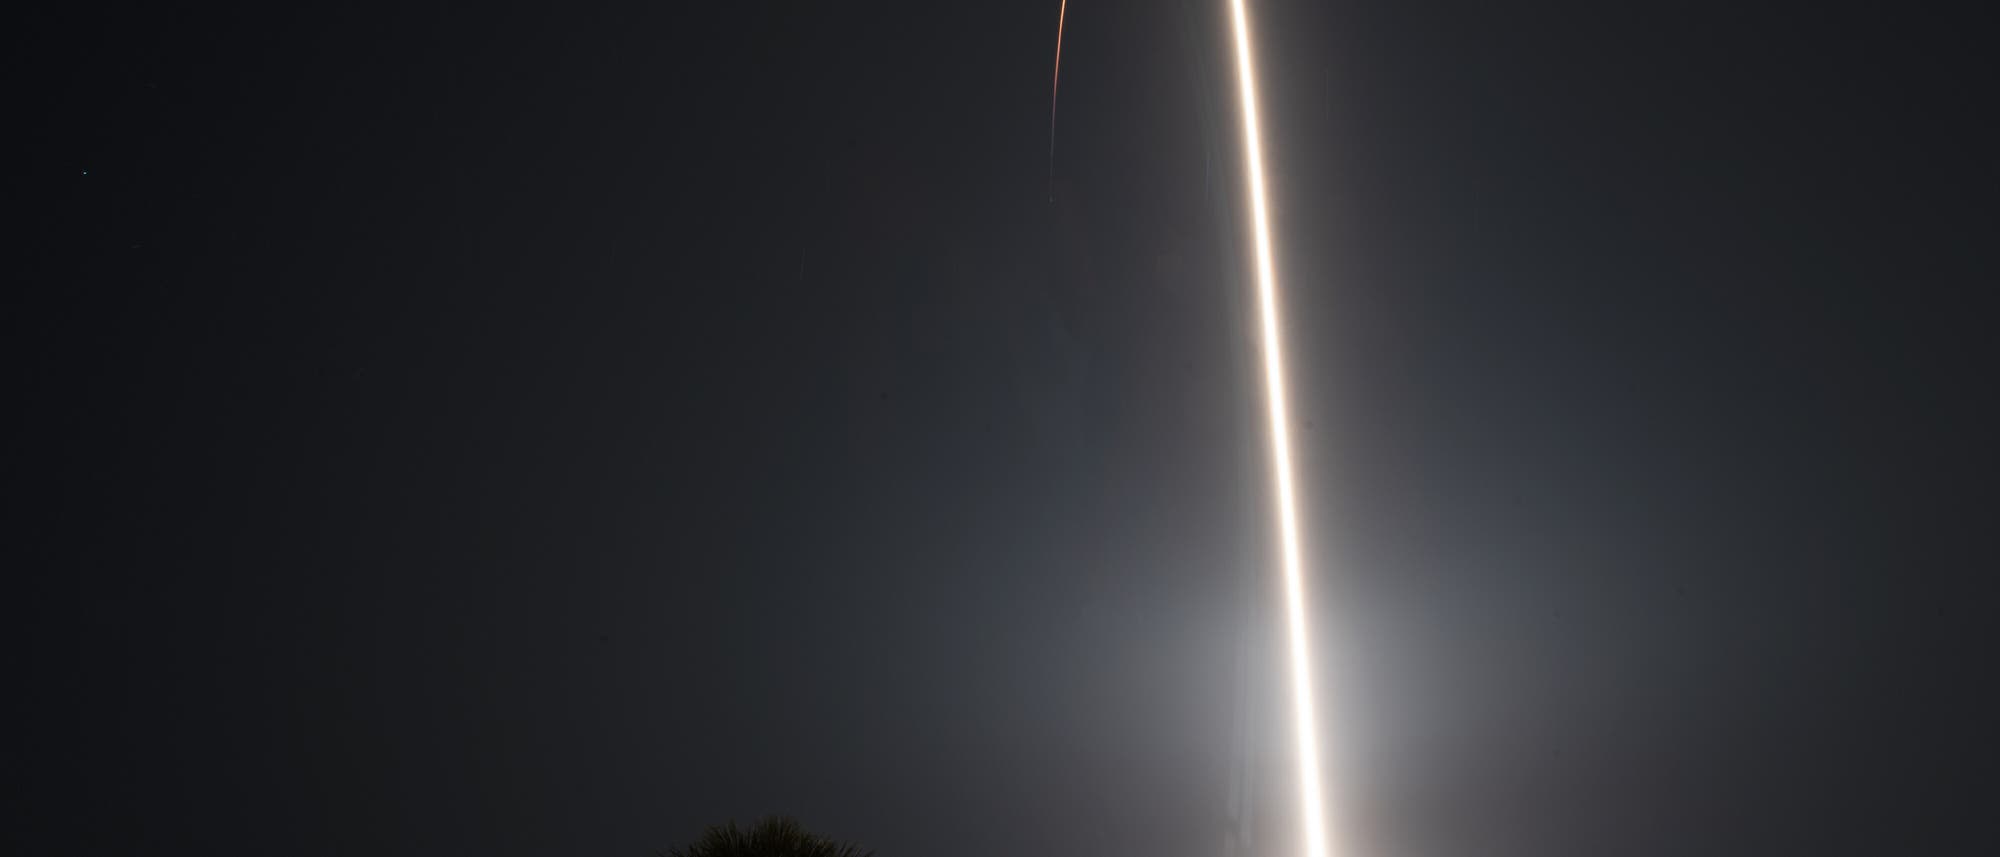 Die zunehmende Anzahl von Kommunikationssatelliten, darunter die SpaceX Starlink-Satelliten, bereiten vielen Astronomen Sorgen.